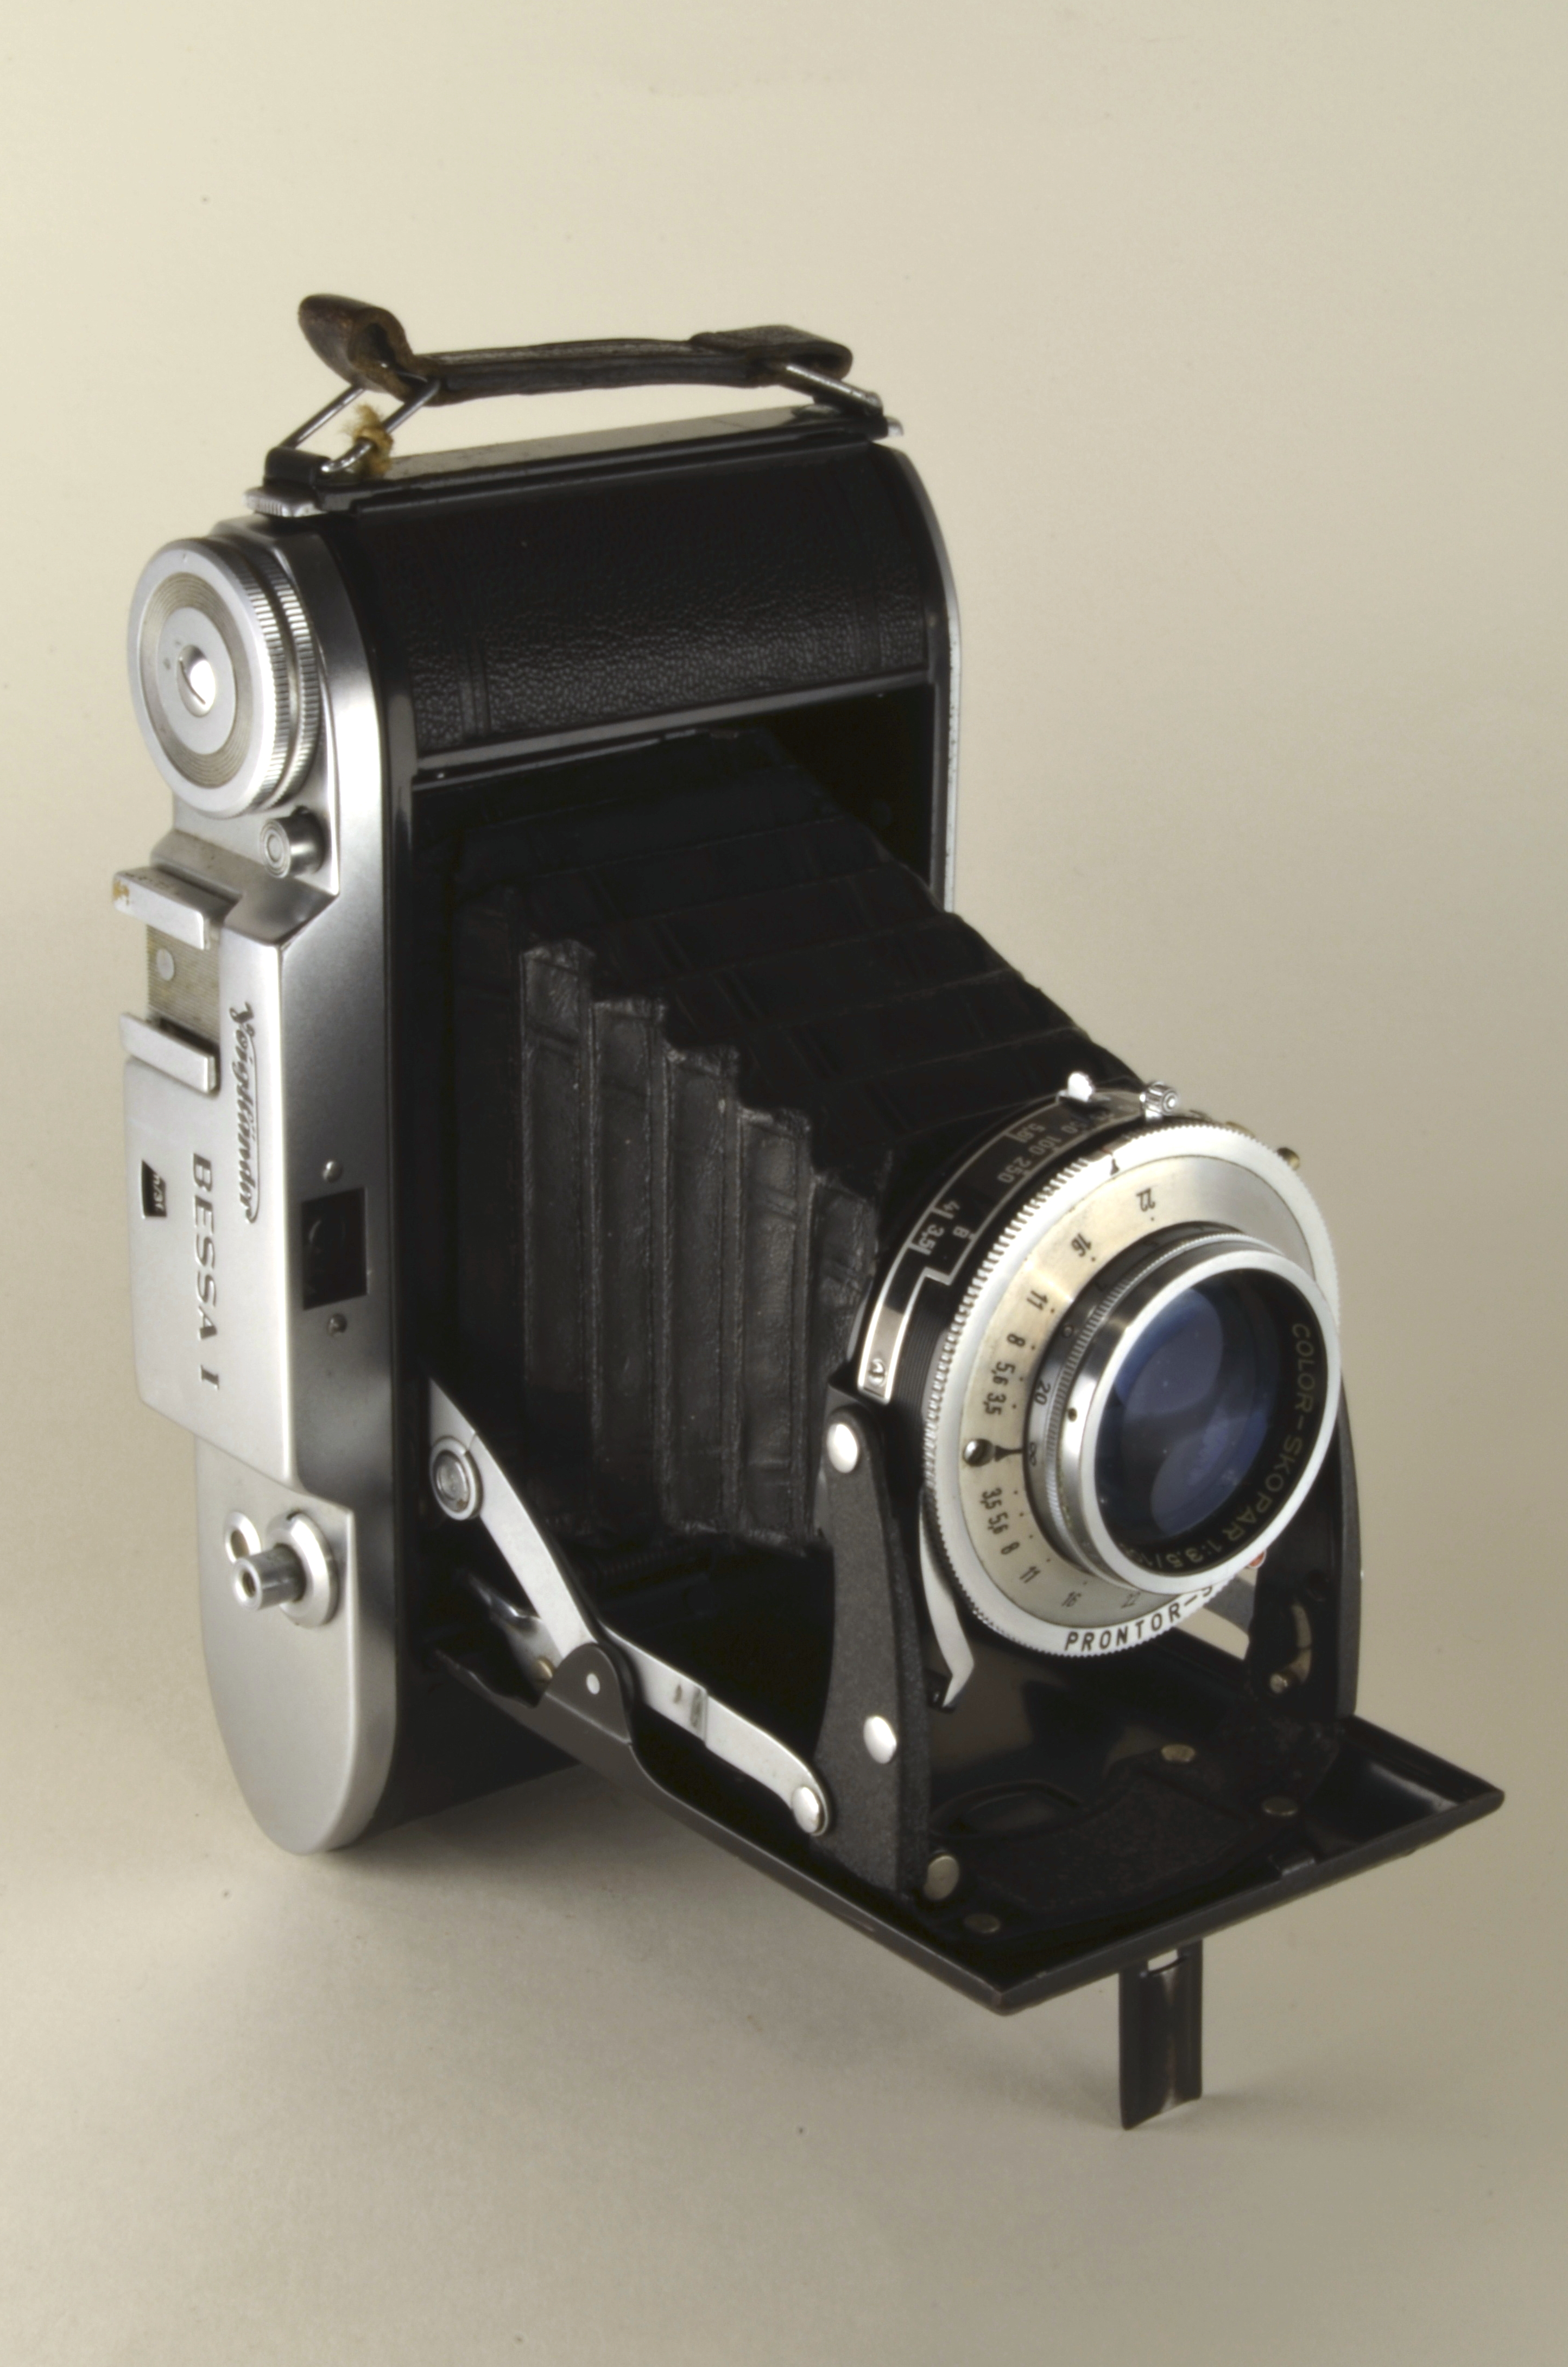 File:Voigtlander Bessa I (1951-1955) - Skopar 3,5-105 - Prontor S 